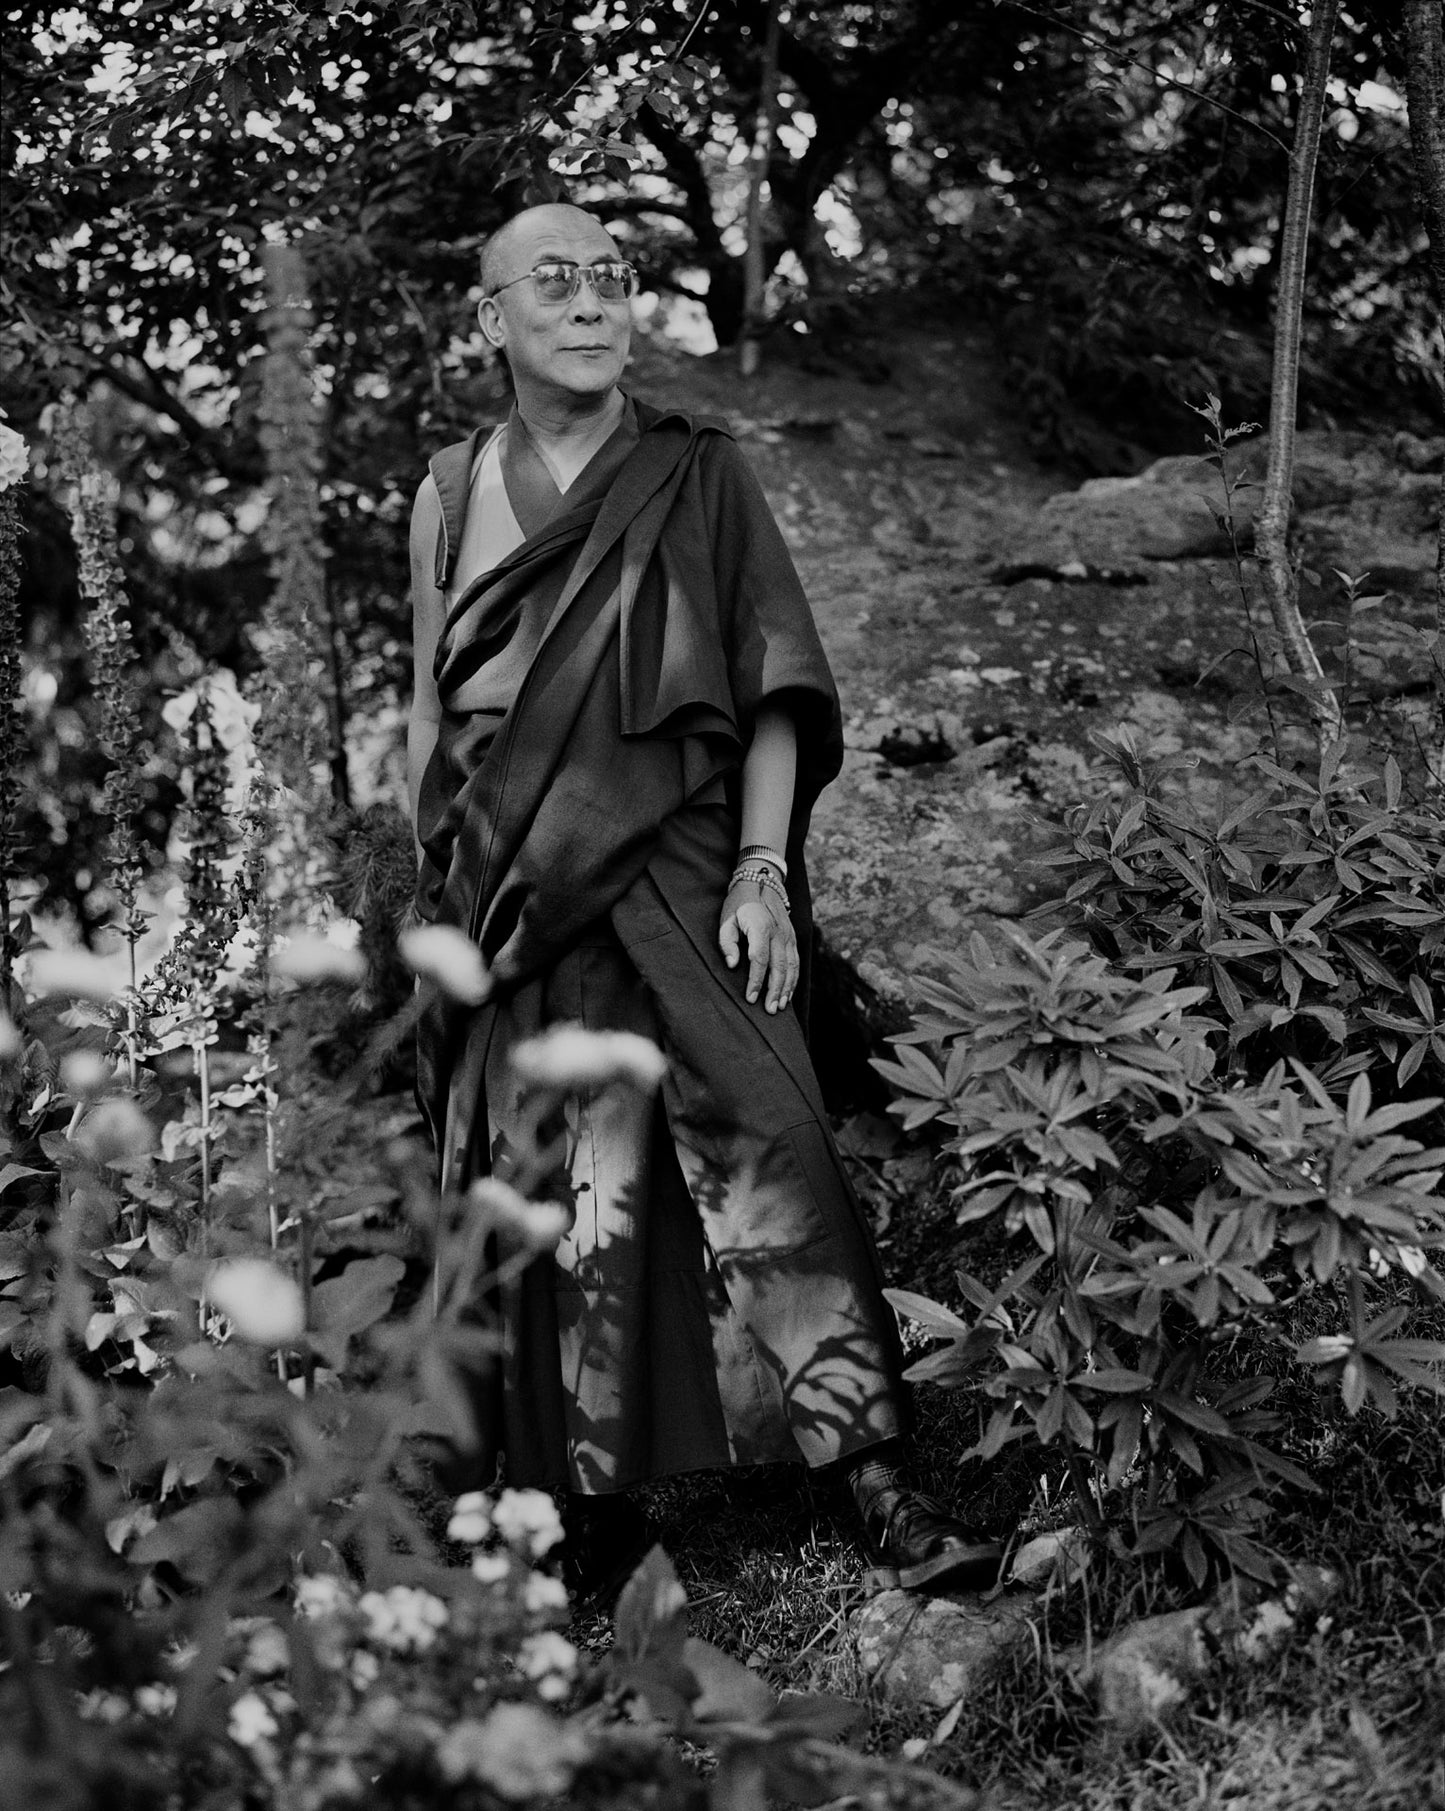 Dalai Lama in his Garden